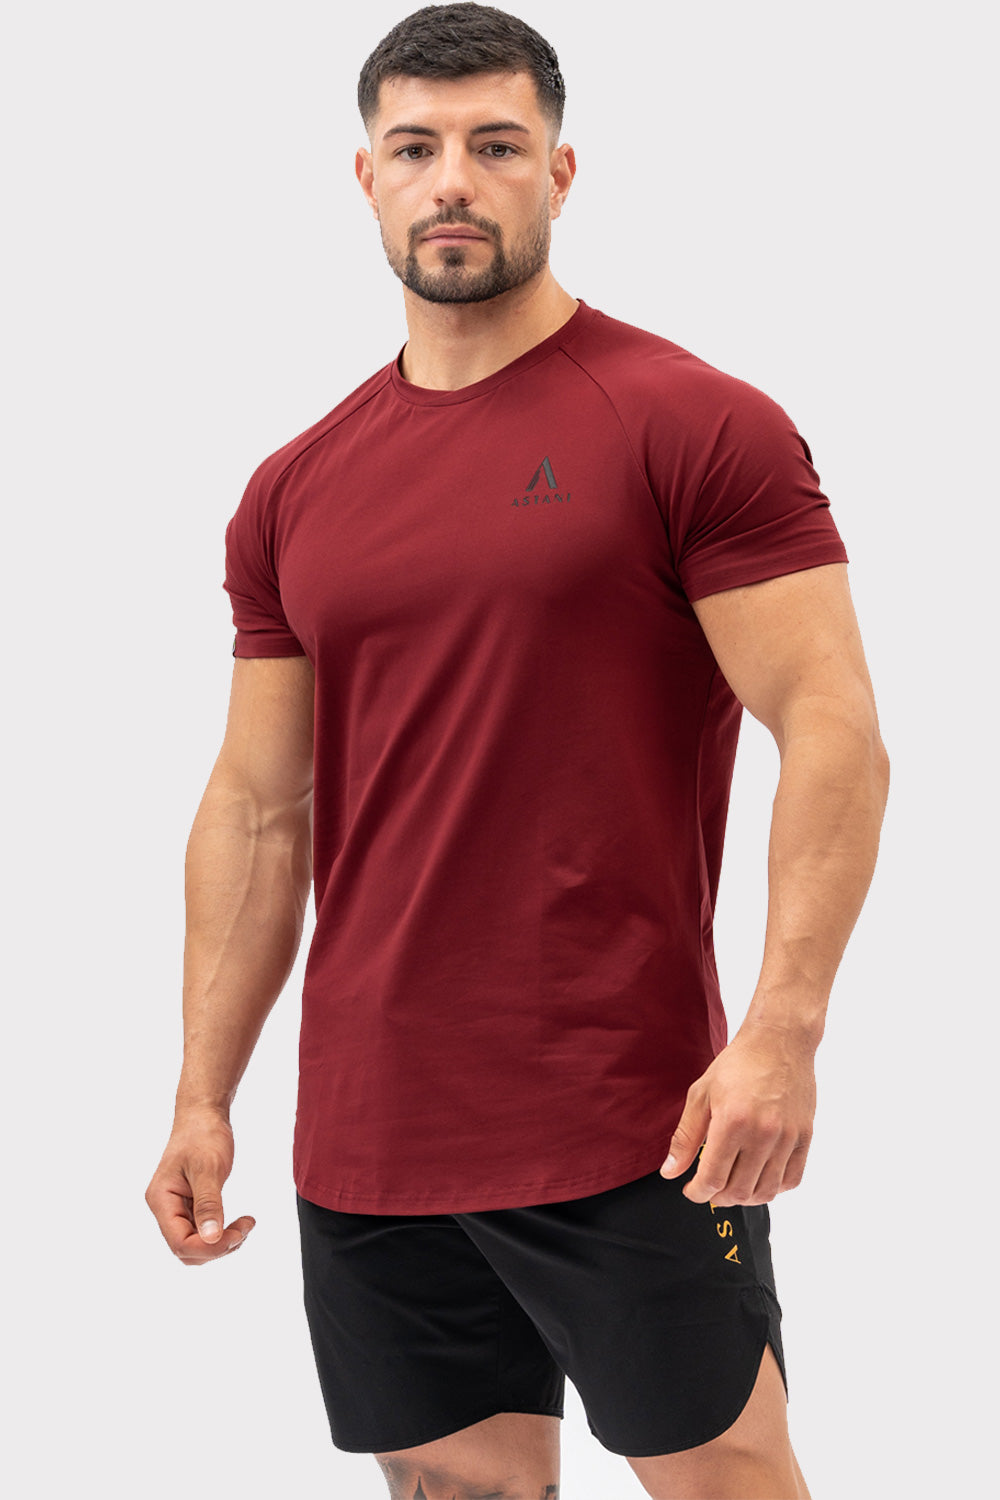 A CODE T-Shirt - Bordowa